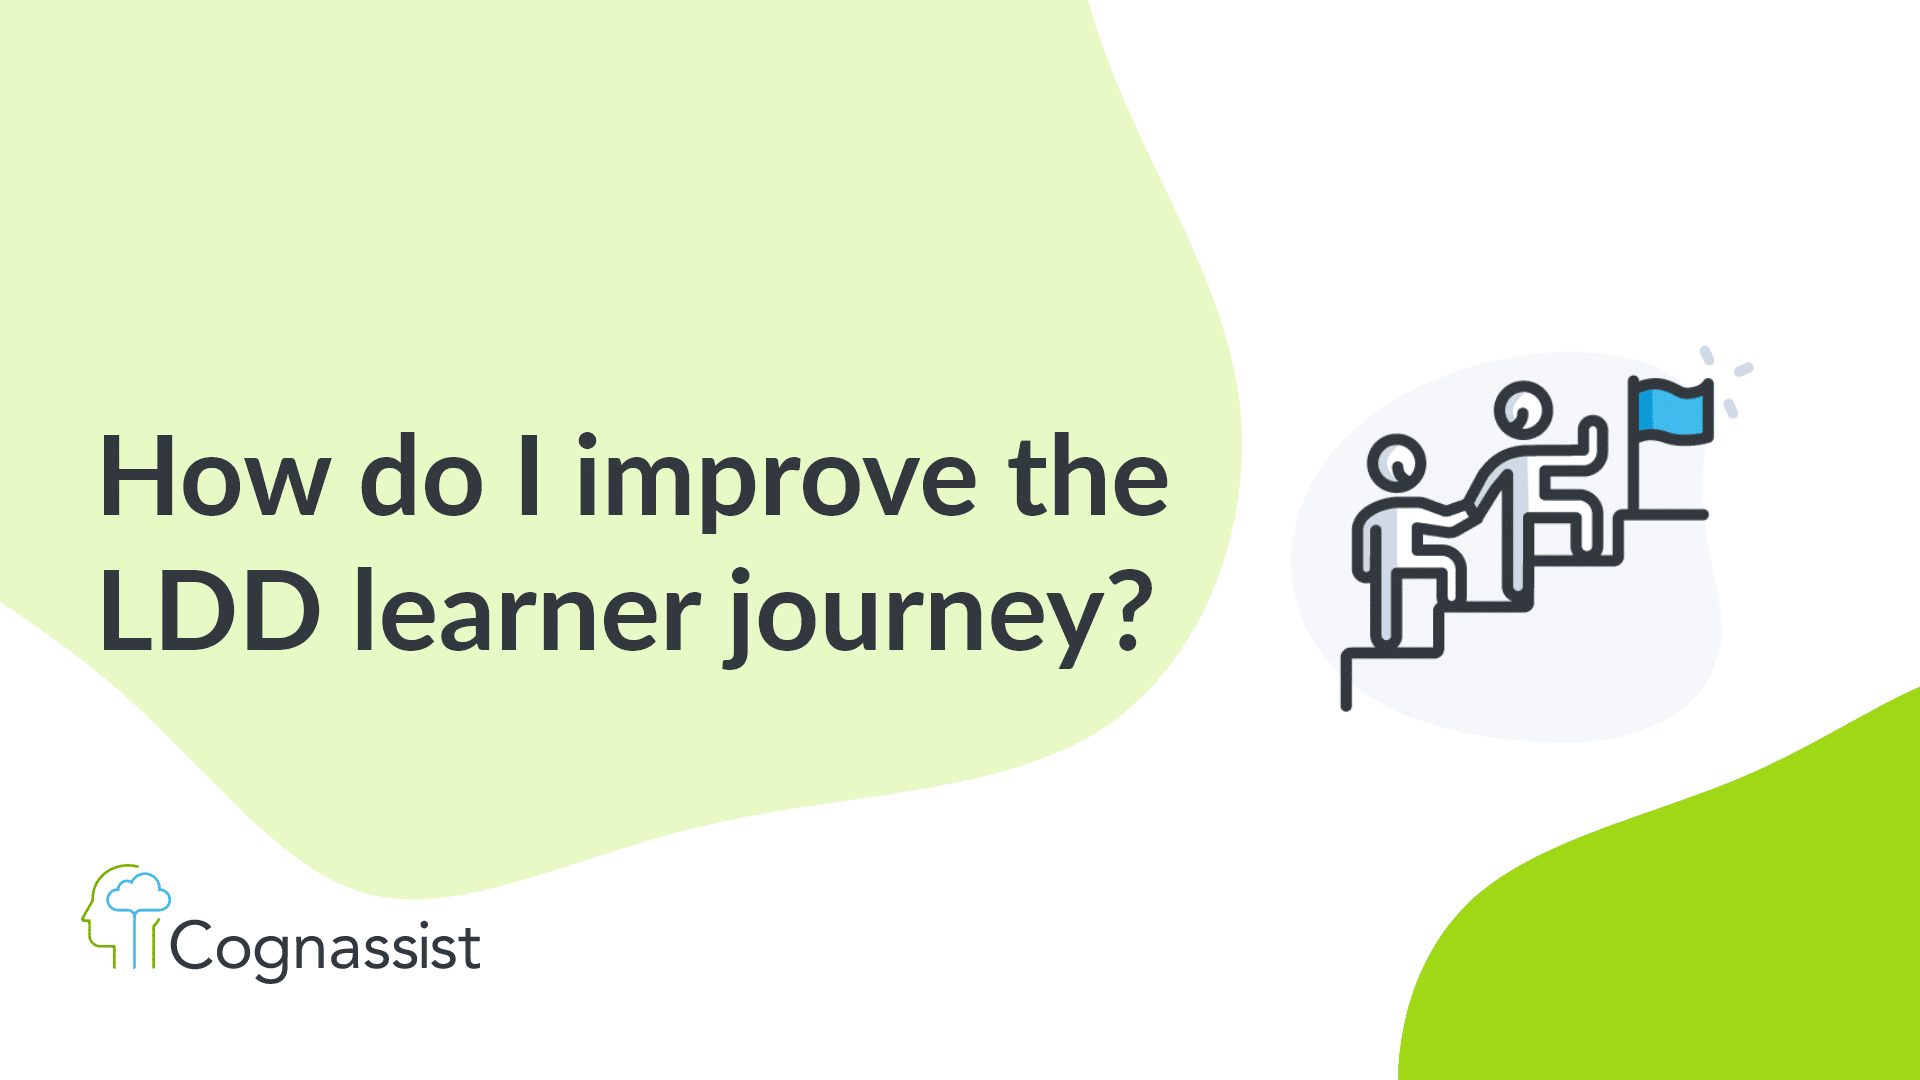 How do I improve the LDD learner journey